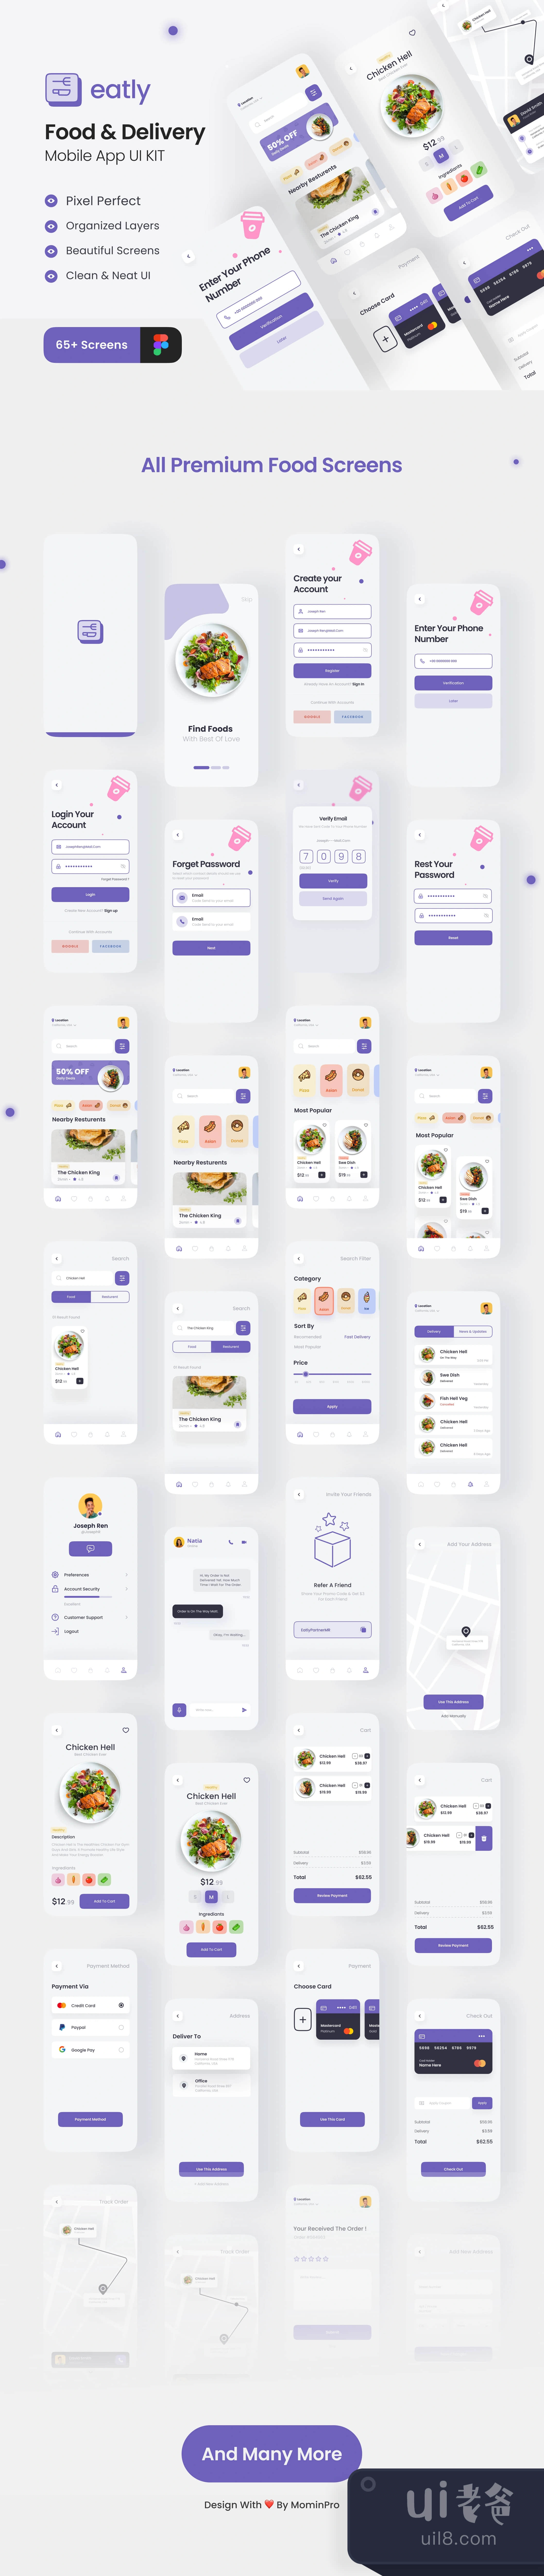 Eatly - 食品配送应用UI工具包 (Eatly - Food Delivery App UI Kit)插图